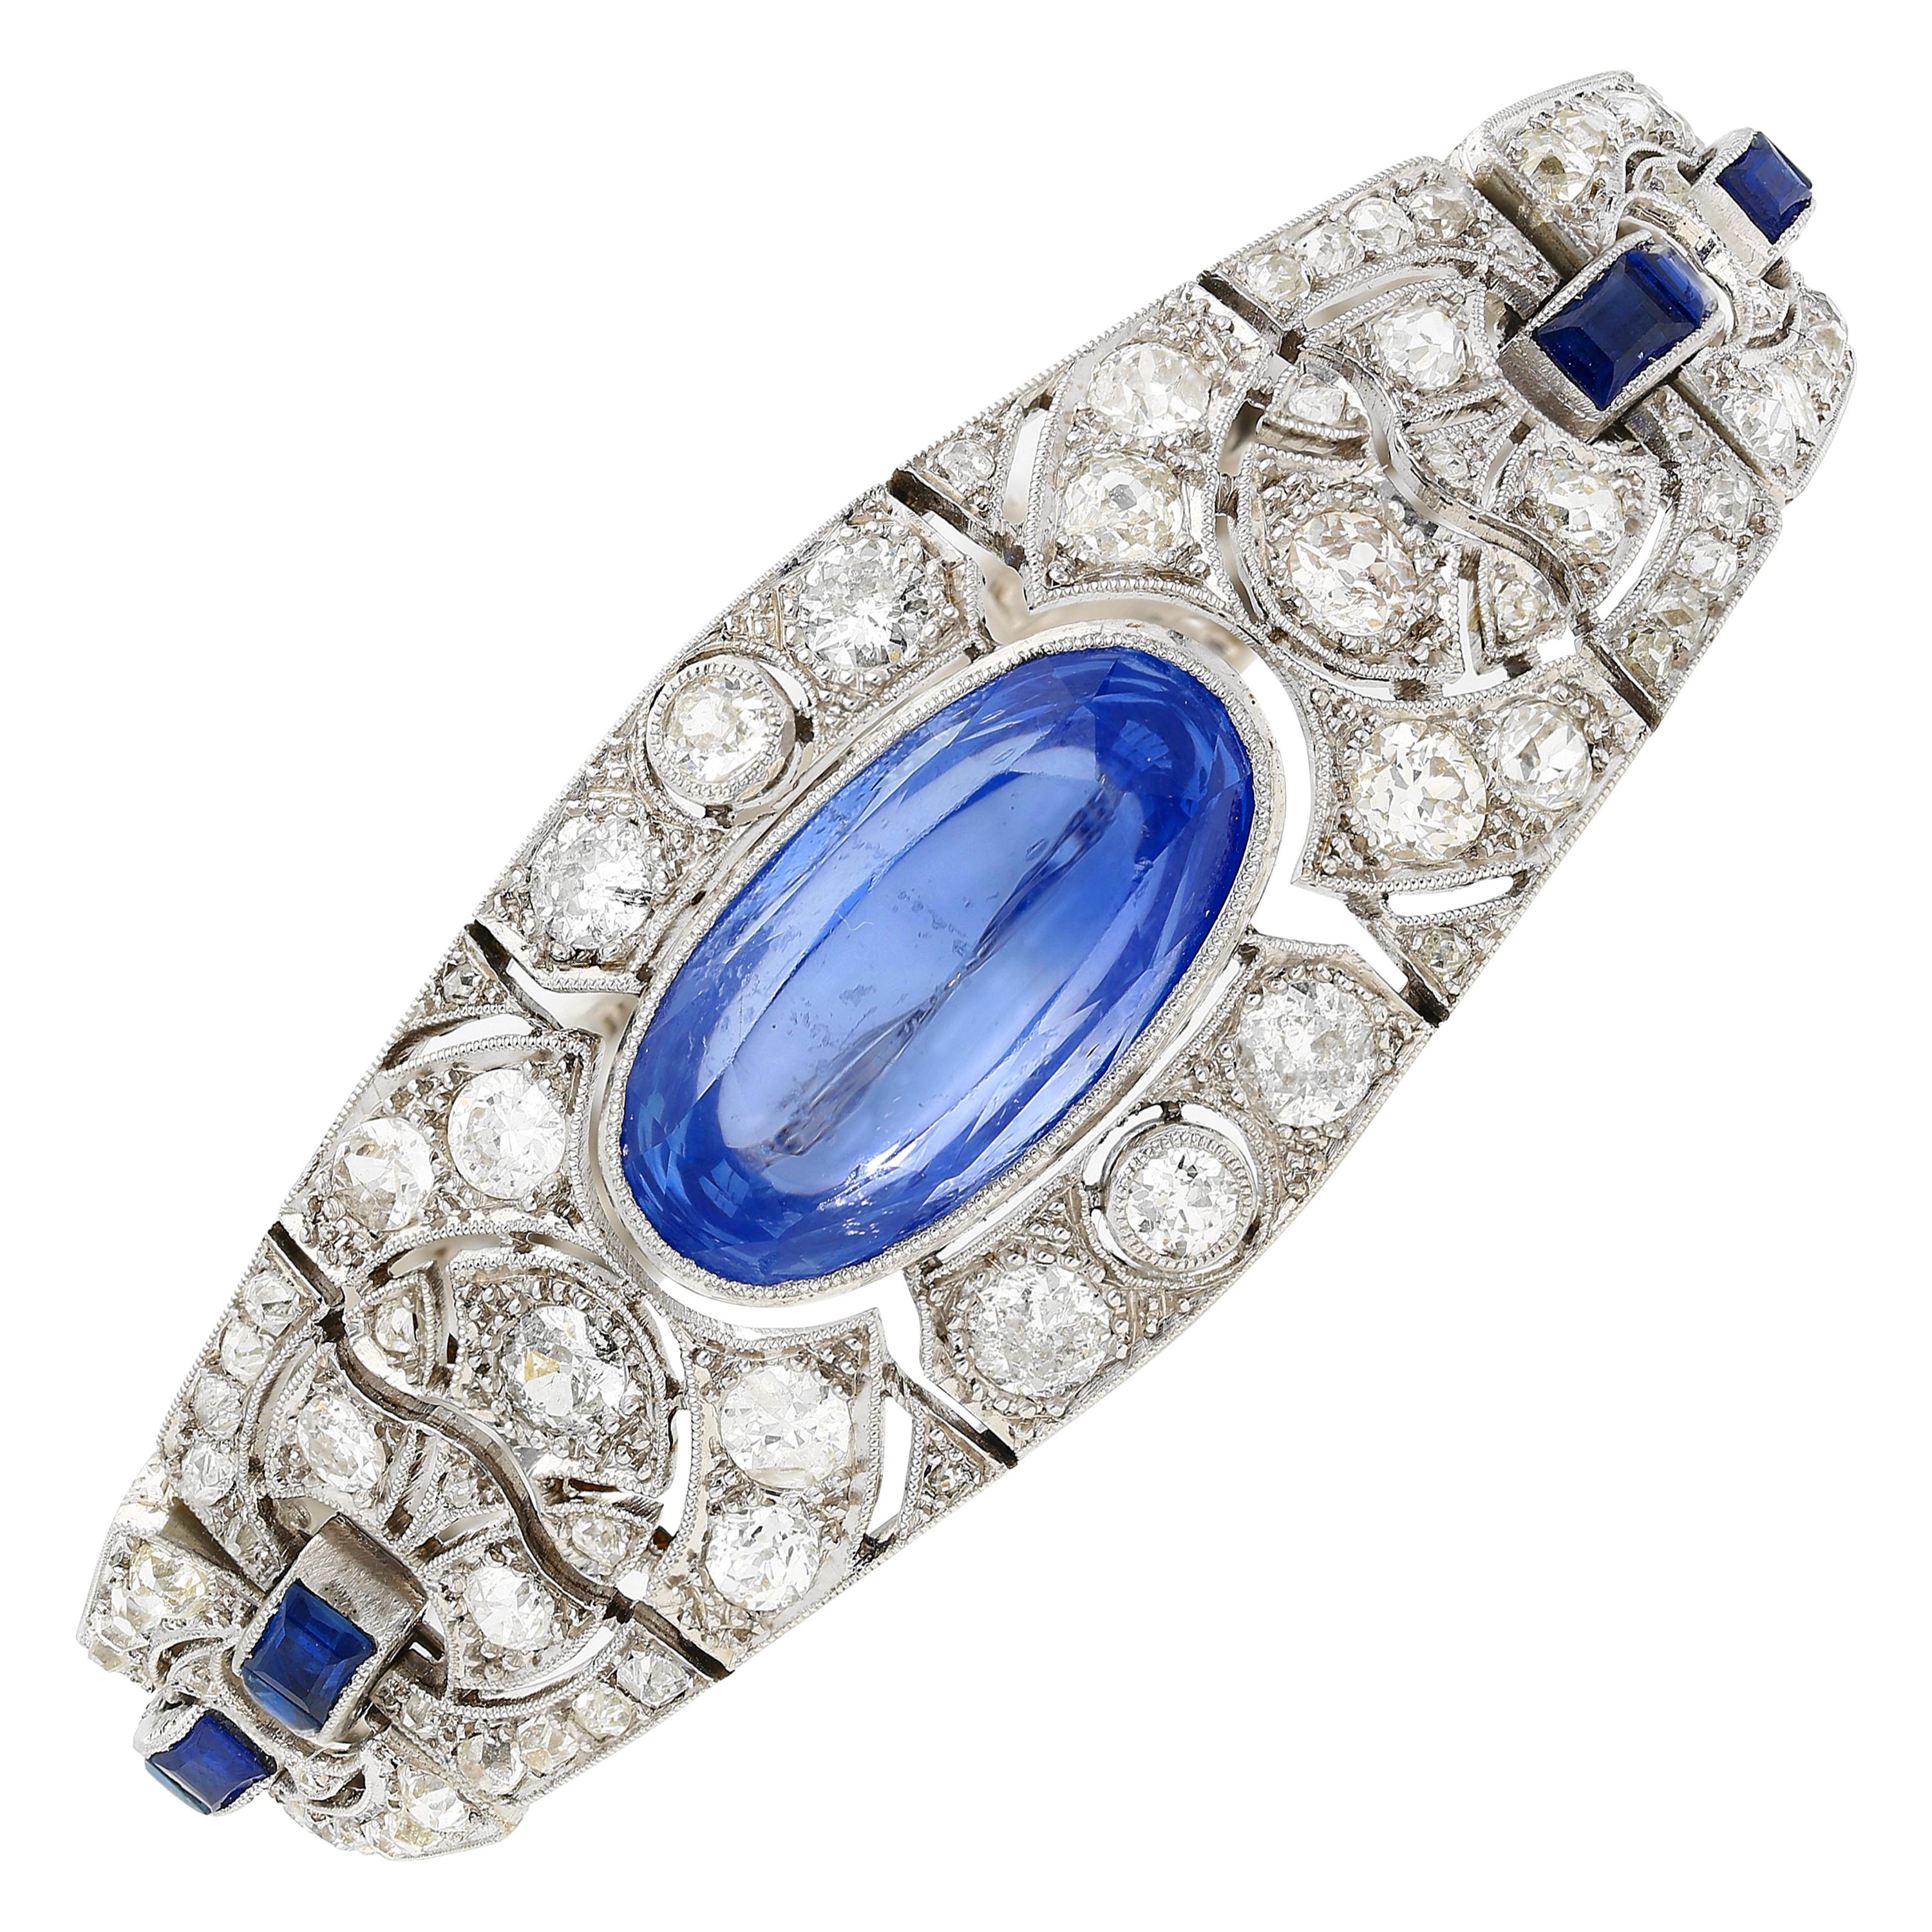 Art Deco Era 20 Carat Oval-Cut Ceylon Sapphire and Old-Euro Cut Diamond Bracelet